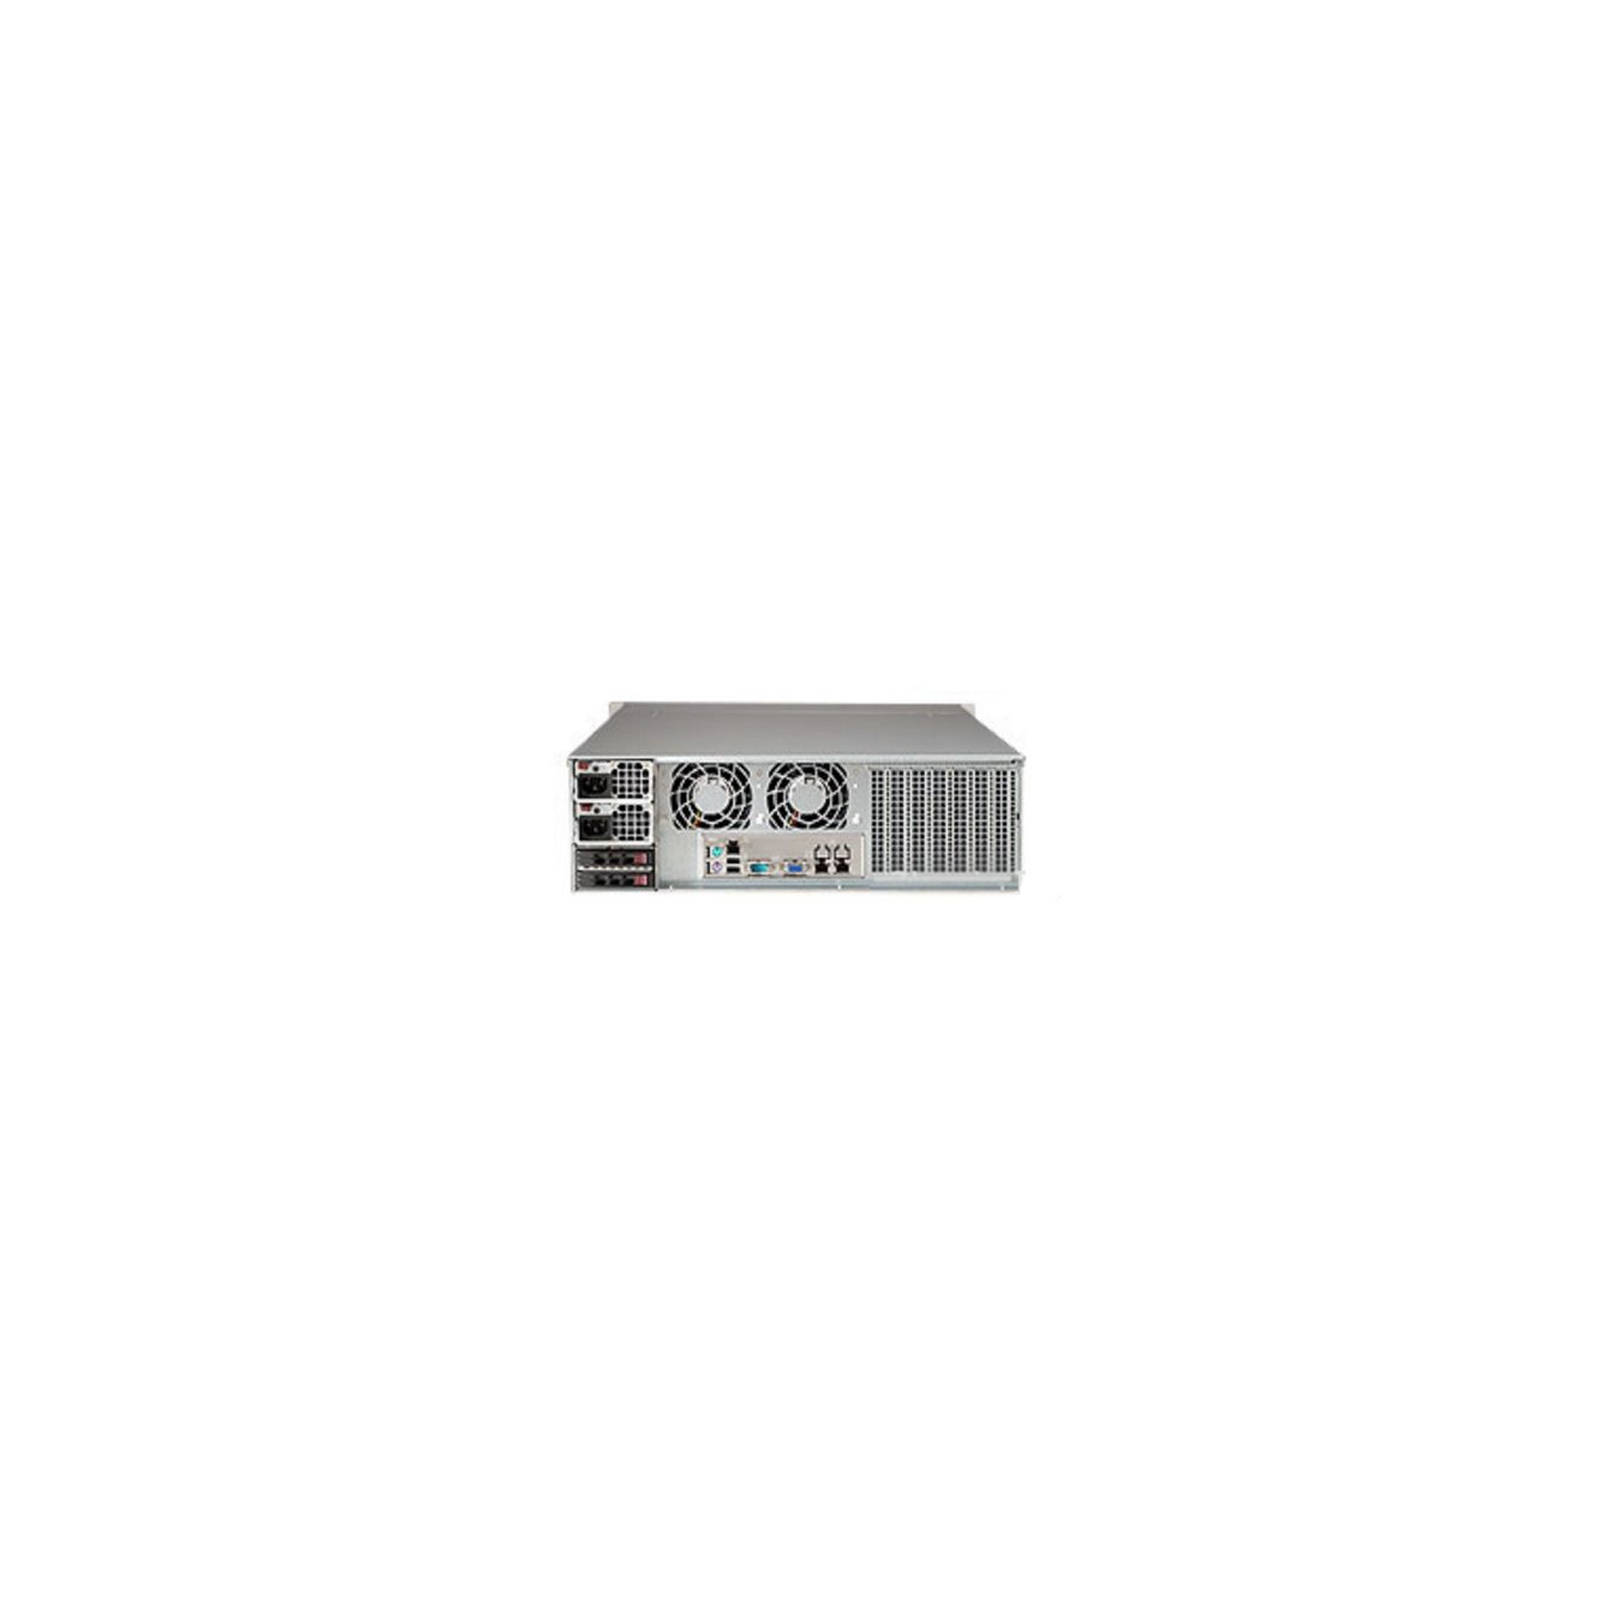 Корпус для сервера Supermicro CSE-836BE16-R920B изображение 2